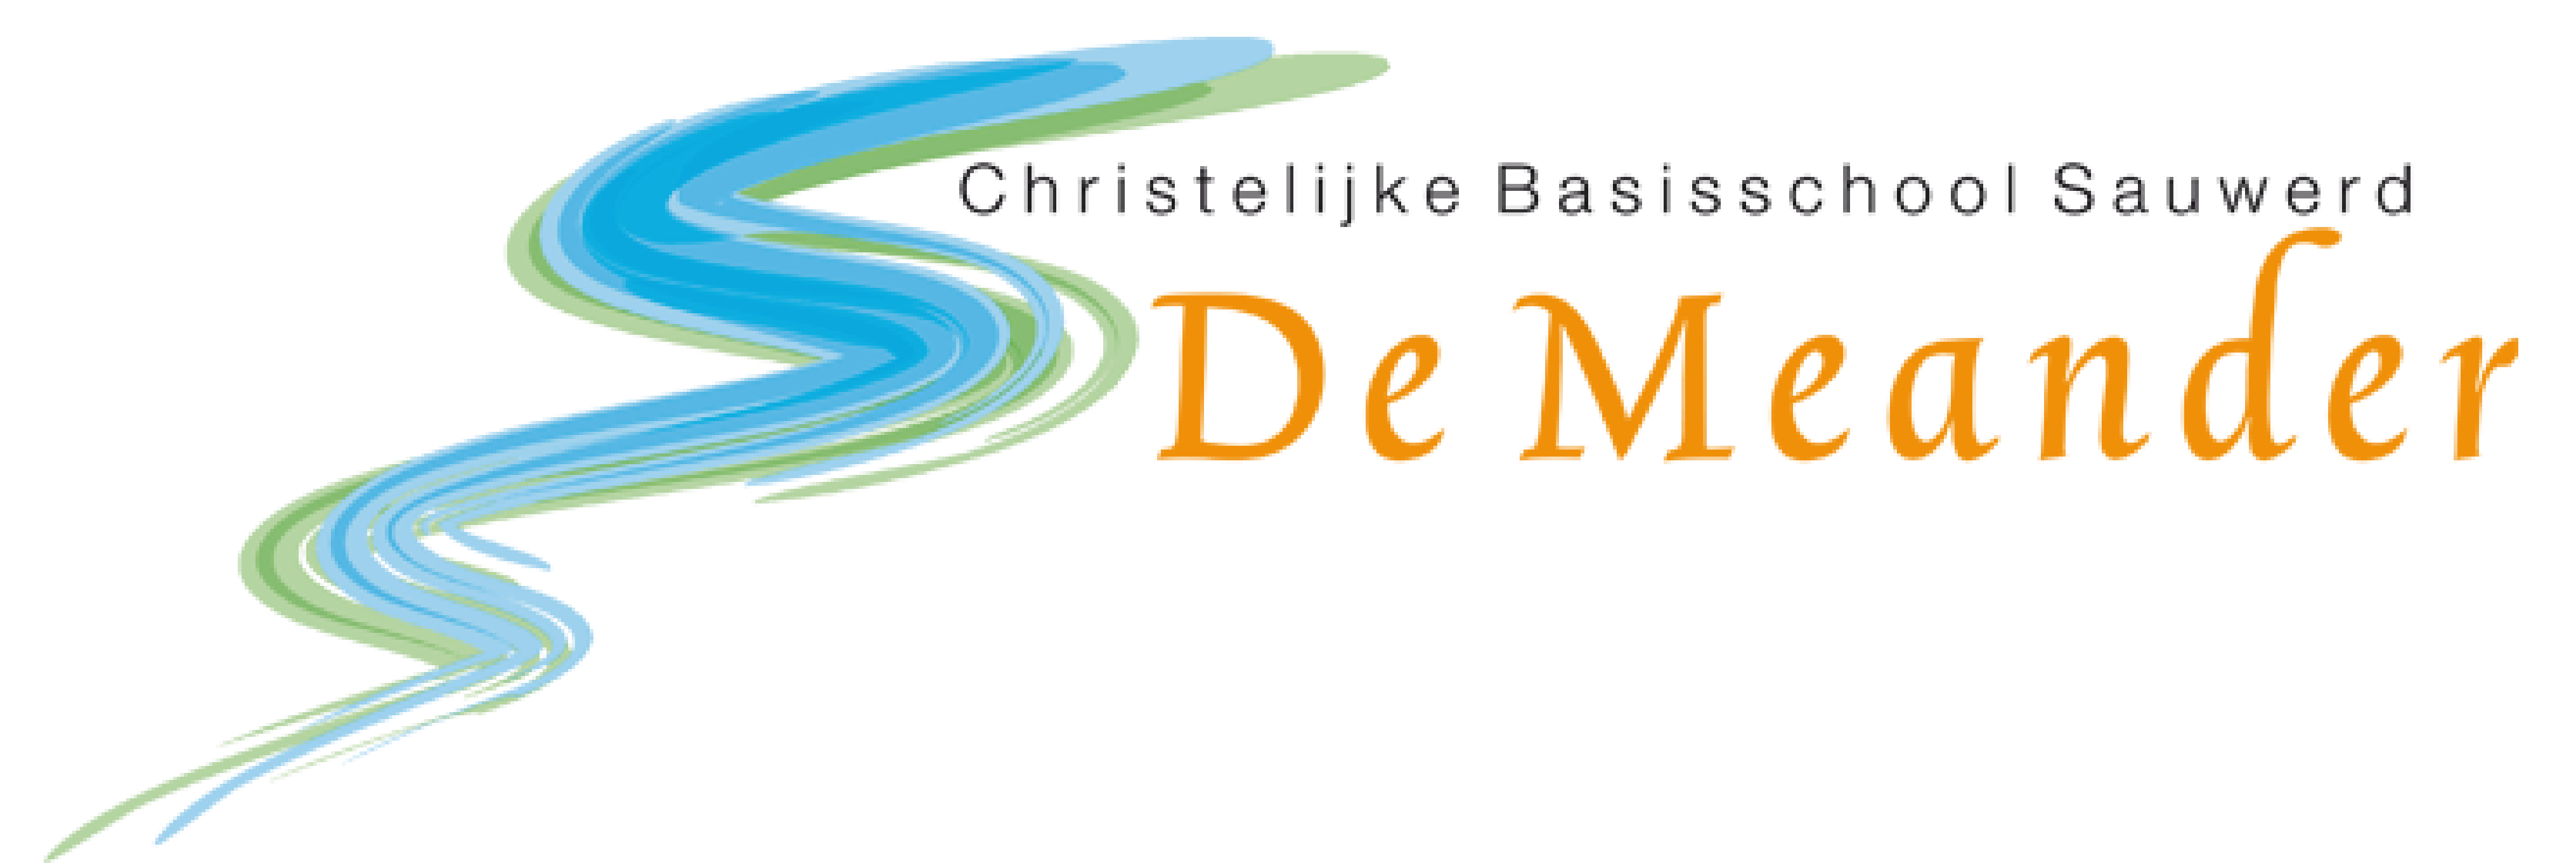 CBS De Meander logo